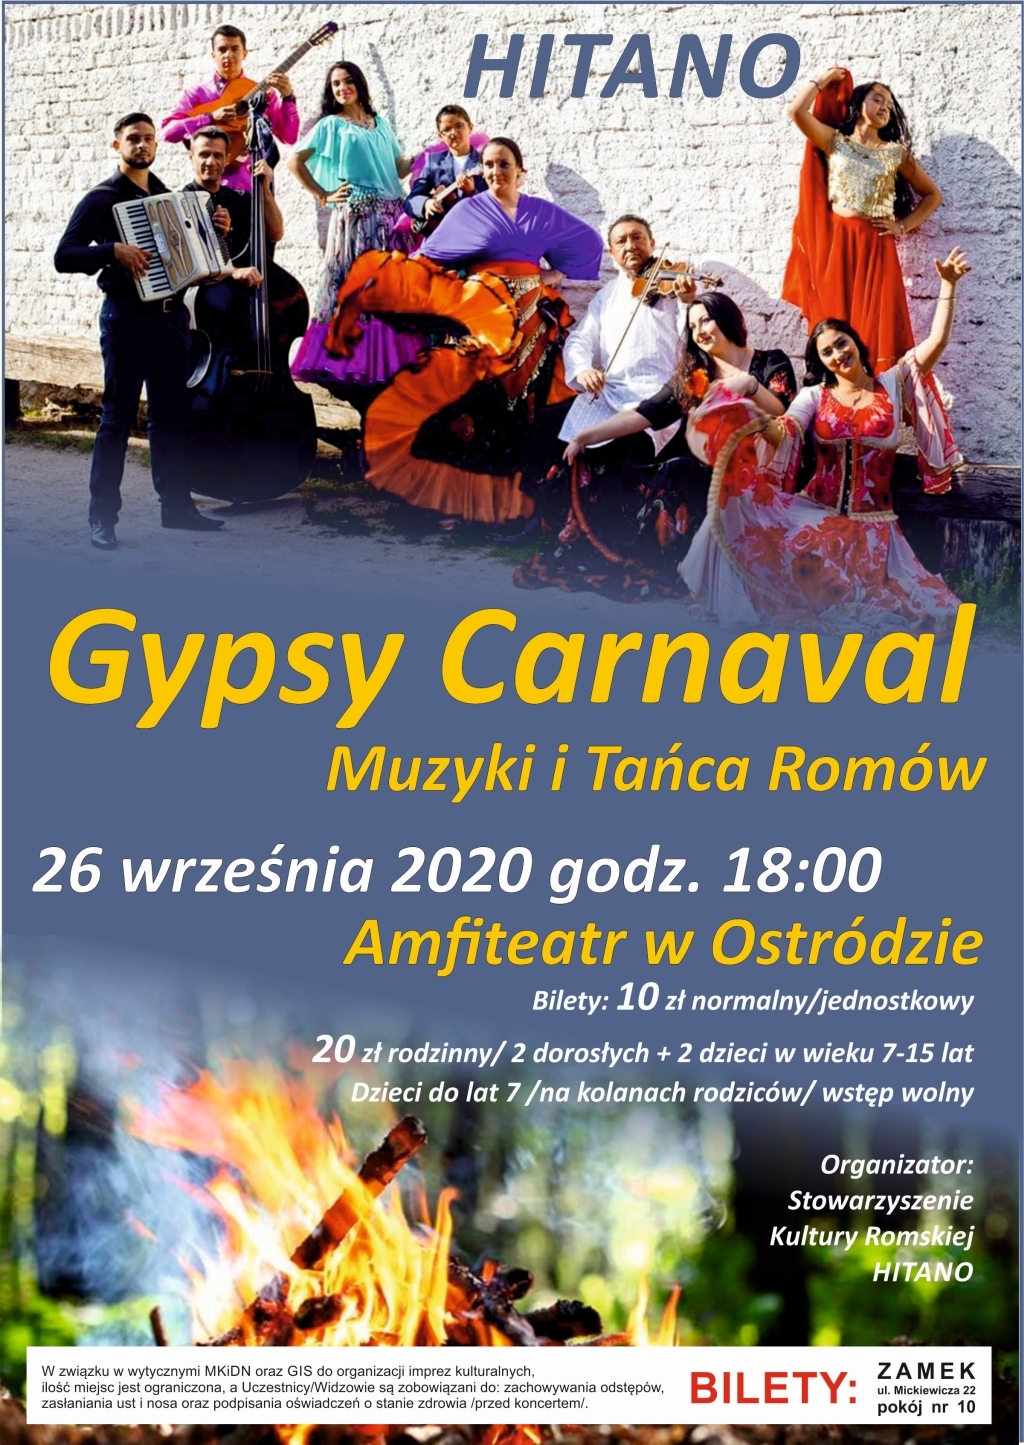 Koncert zespołu HITANO – Gypsy Carnaval Muzyki i Tańca Romów